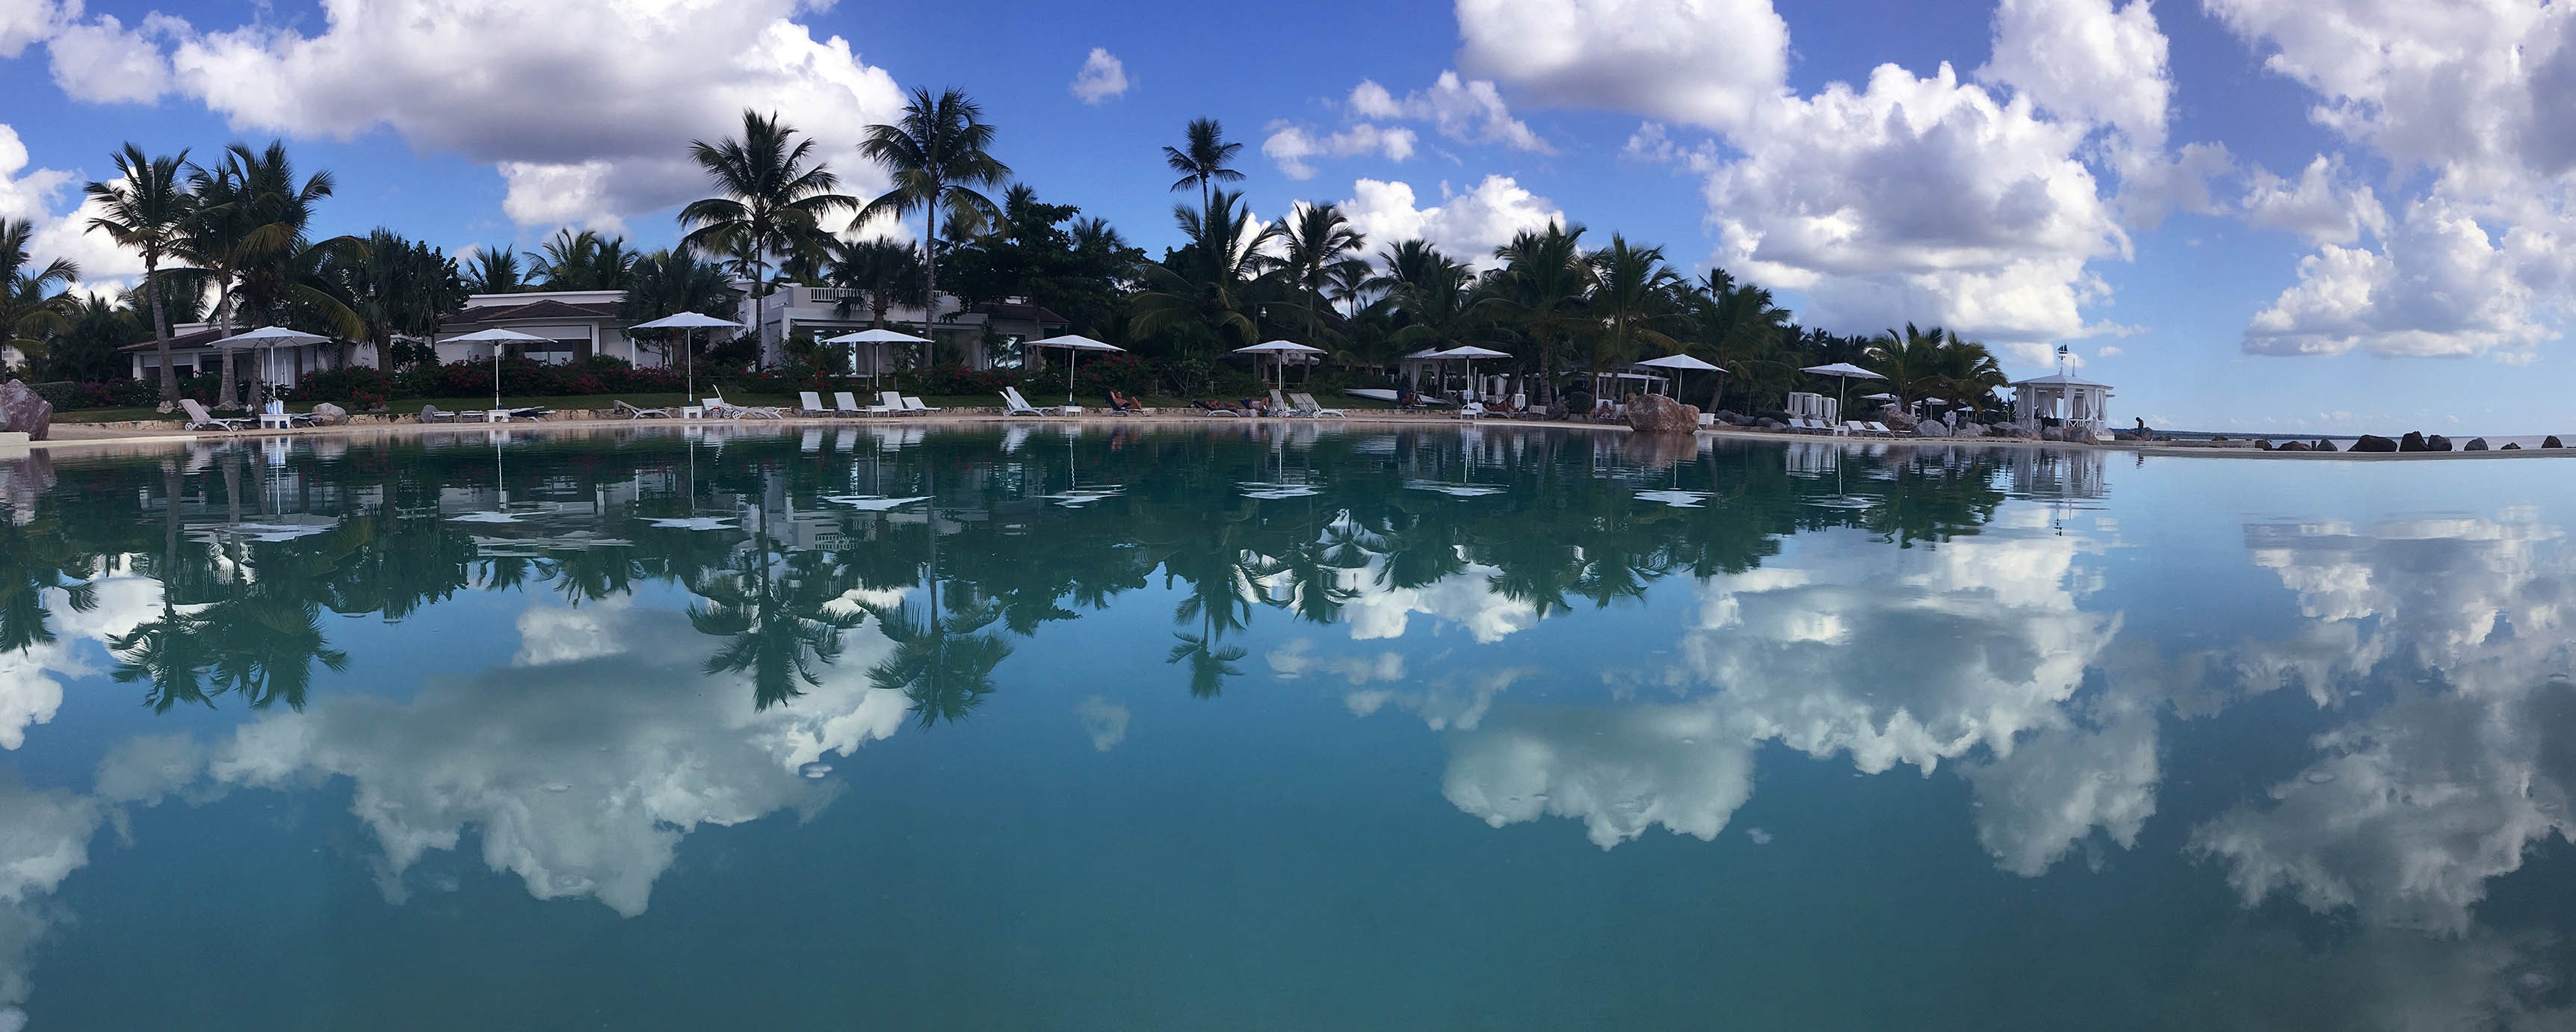 The gorgeous oceanic pool of Santo Domingo - استخر های شنا